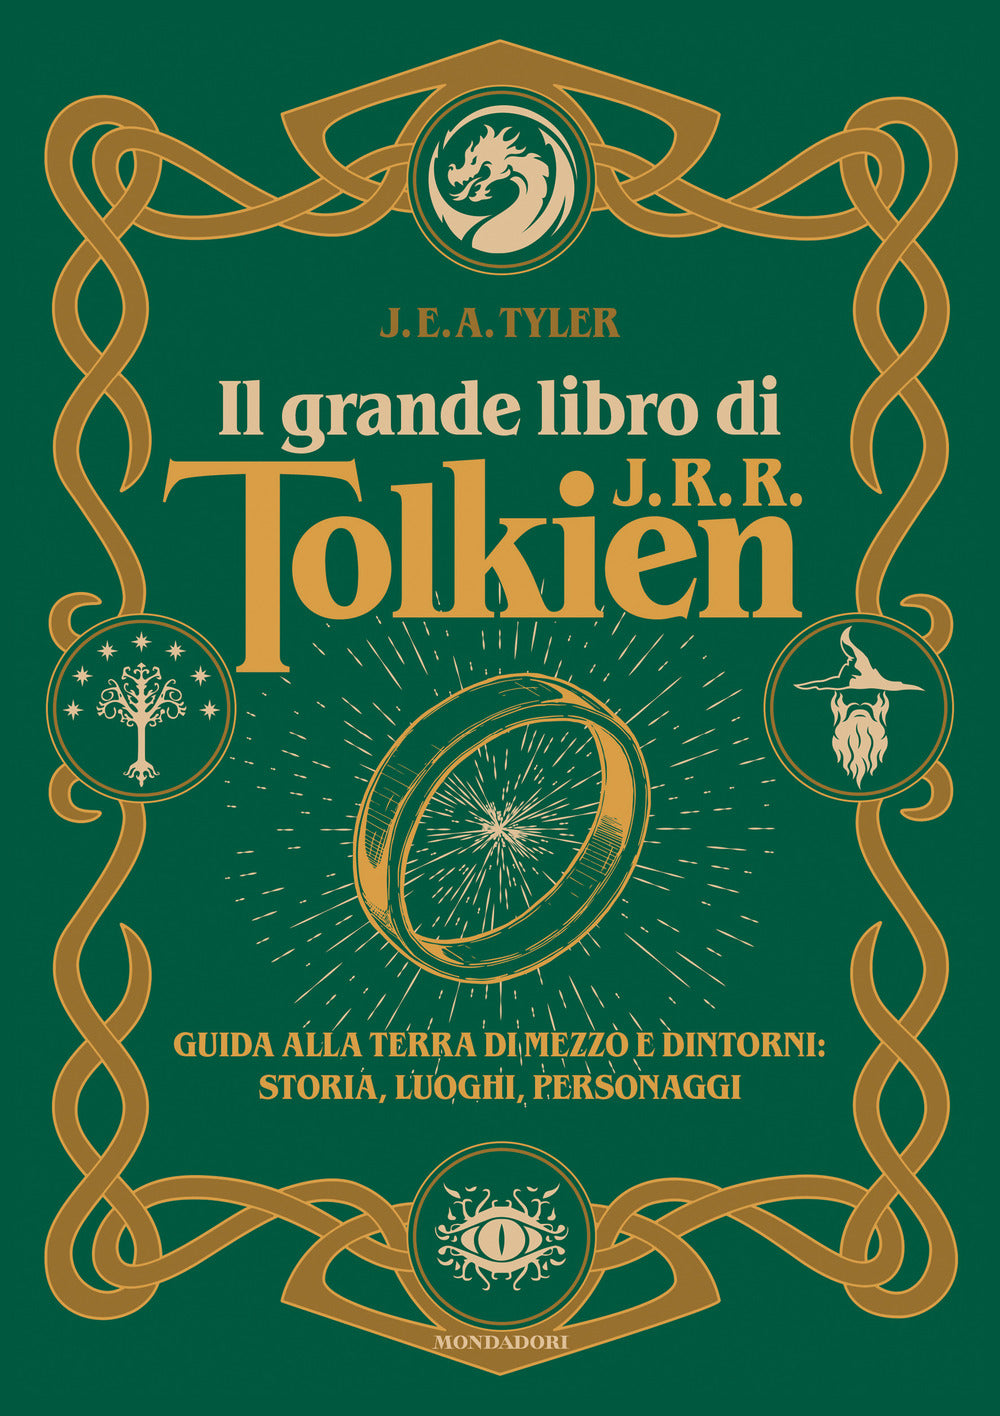 Il grande libro di J.R.R. Tolkien. Guida alla Terra di mezzo e dintorni: storia, luoghi, personaggi.